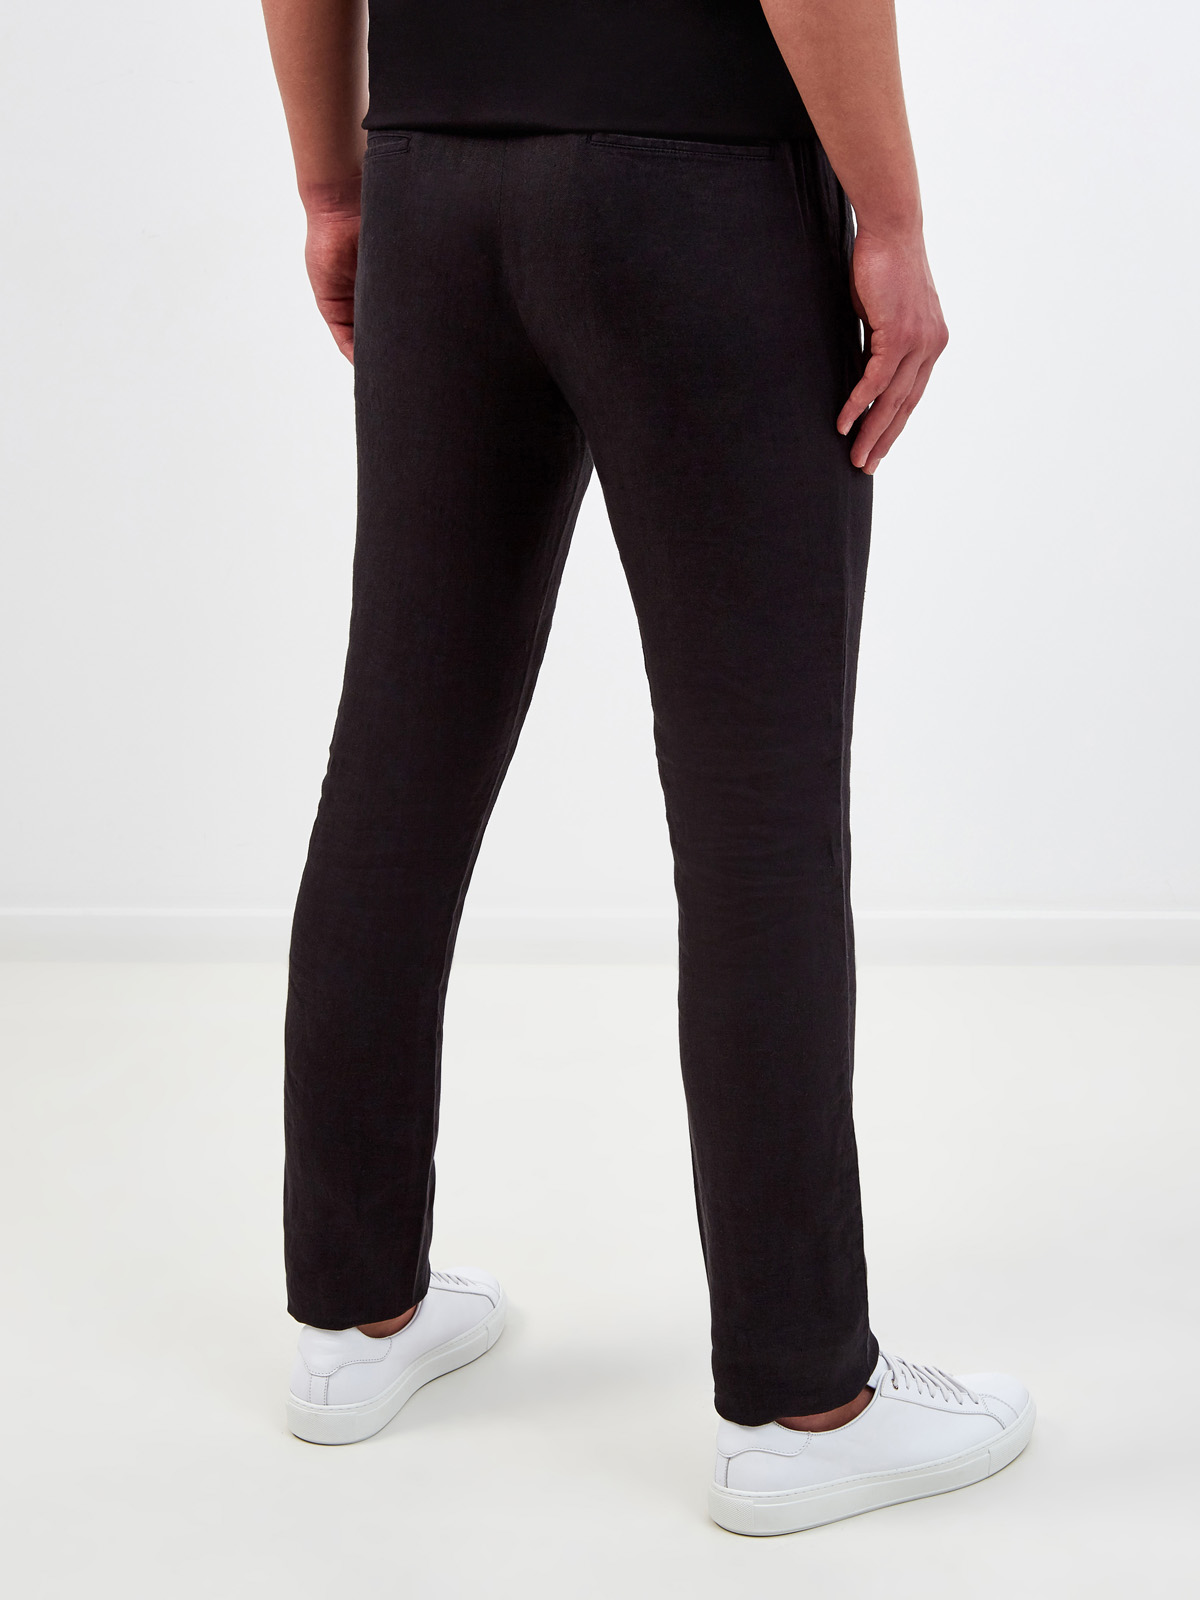 Однотонные брюки из дышащей льняной ткани CUDGI, цвет черный, размер M;L;XL;2XL;S - фото 4